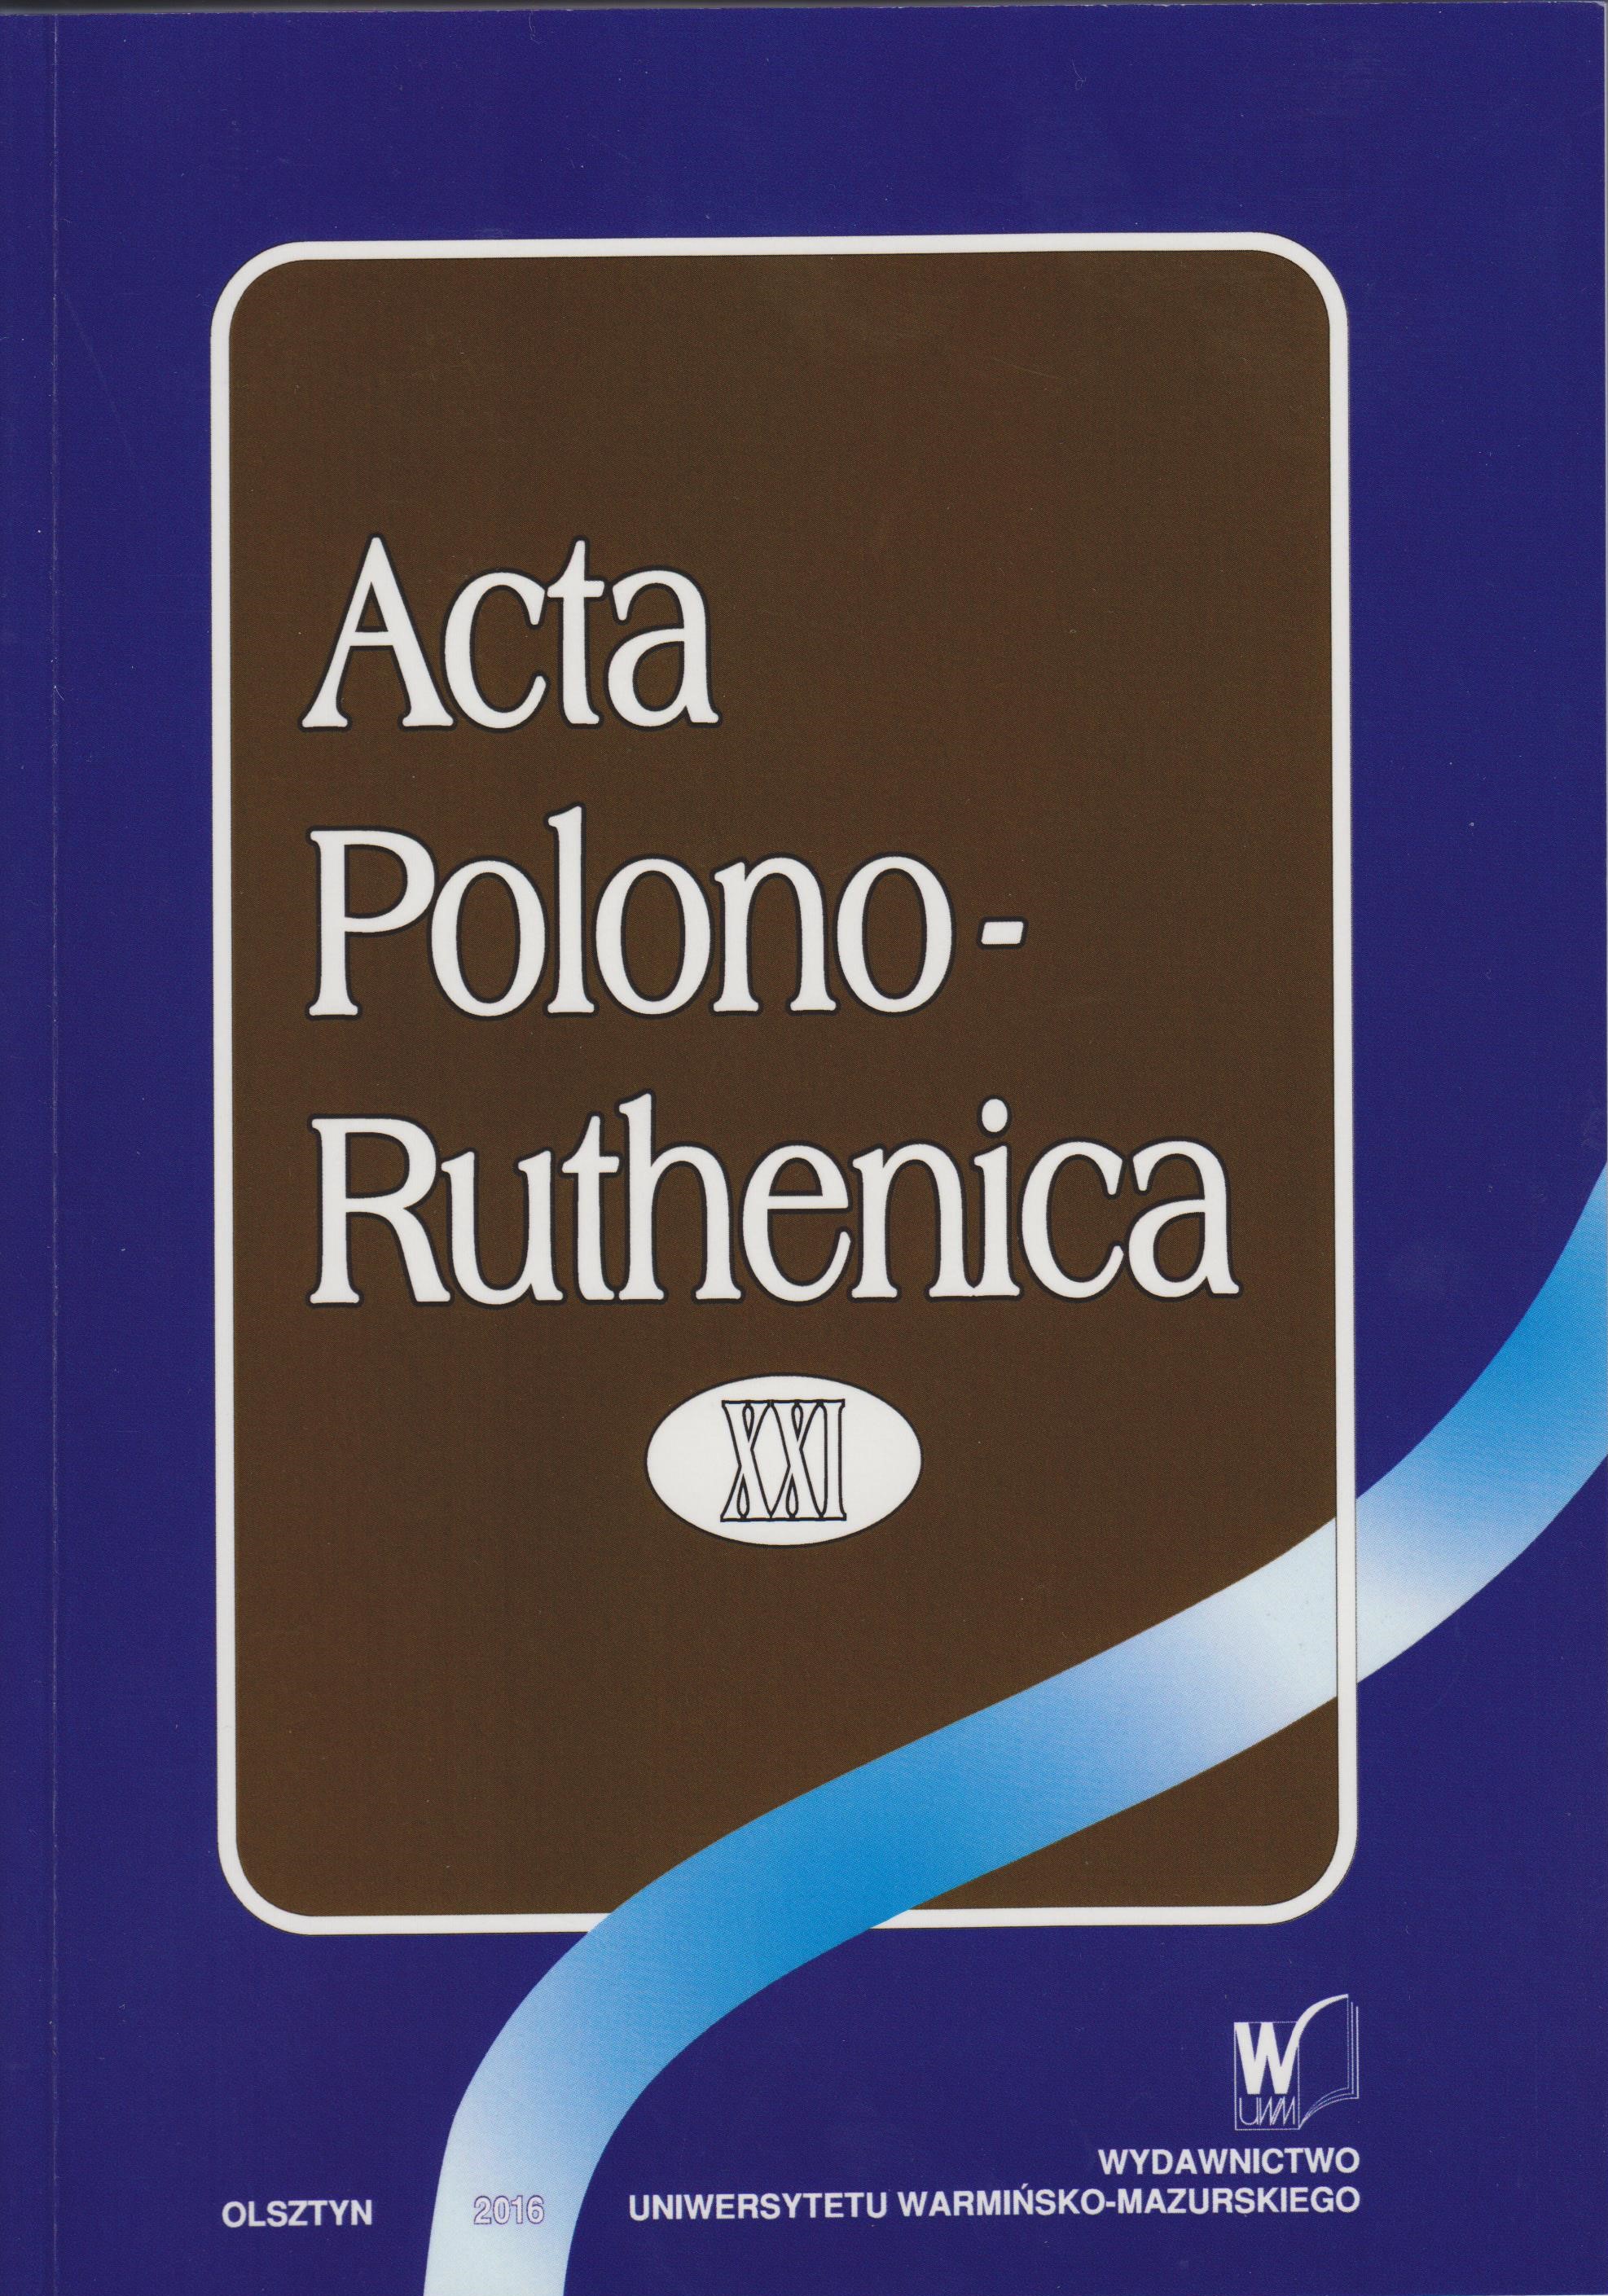 Acta Polono-Ruthenica Cover Image